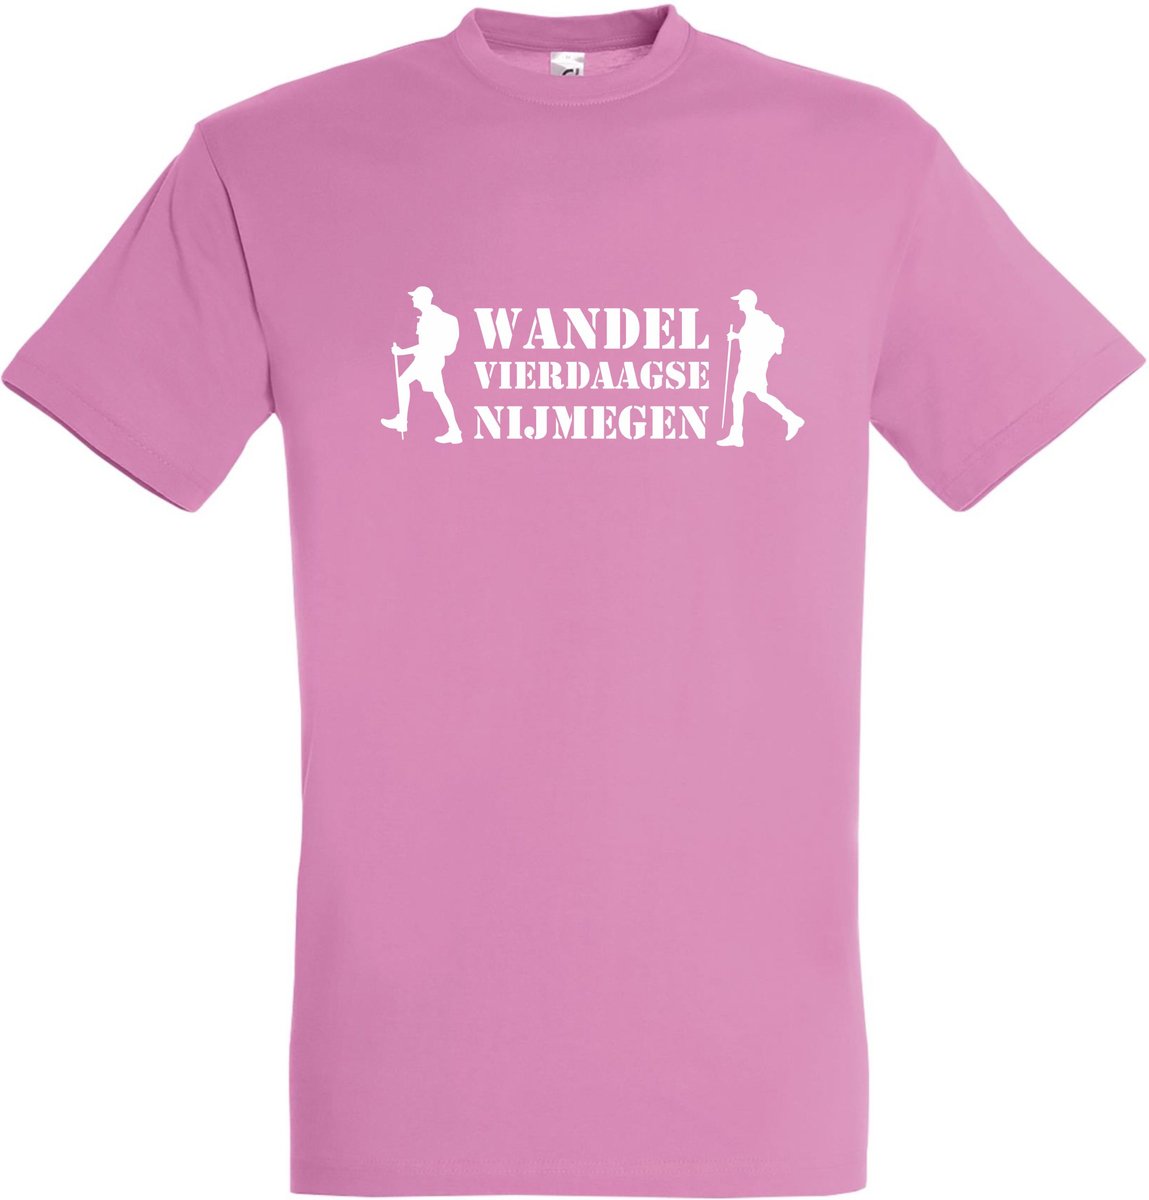 T-shirt Wandel vierdaagse NIjmegen met wandelaars |Wandelvierdaagse | vierdaagse Nijmegen | Roze woensdag | Roze | maat S